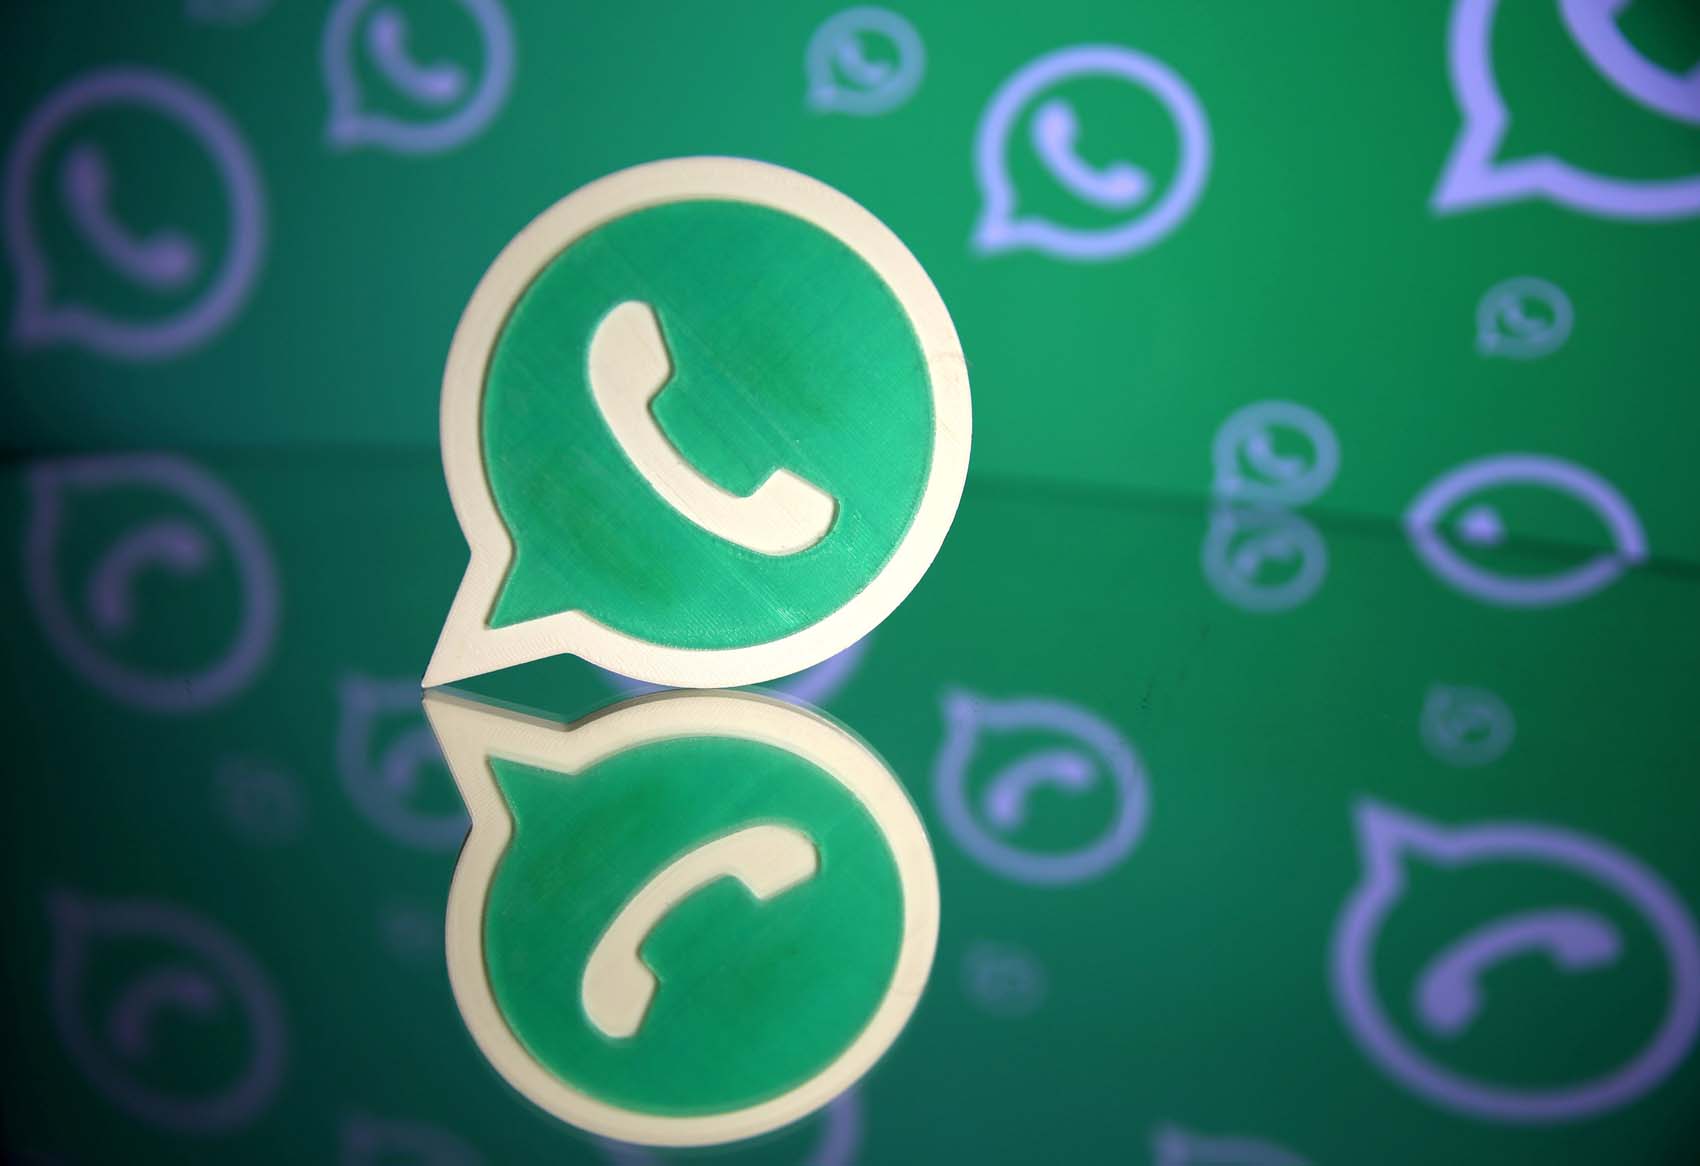 Ante fantasías de Jorge Rodríguez, WhatsApp aclaró que nadie puede vulnerar su seguridad